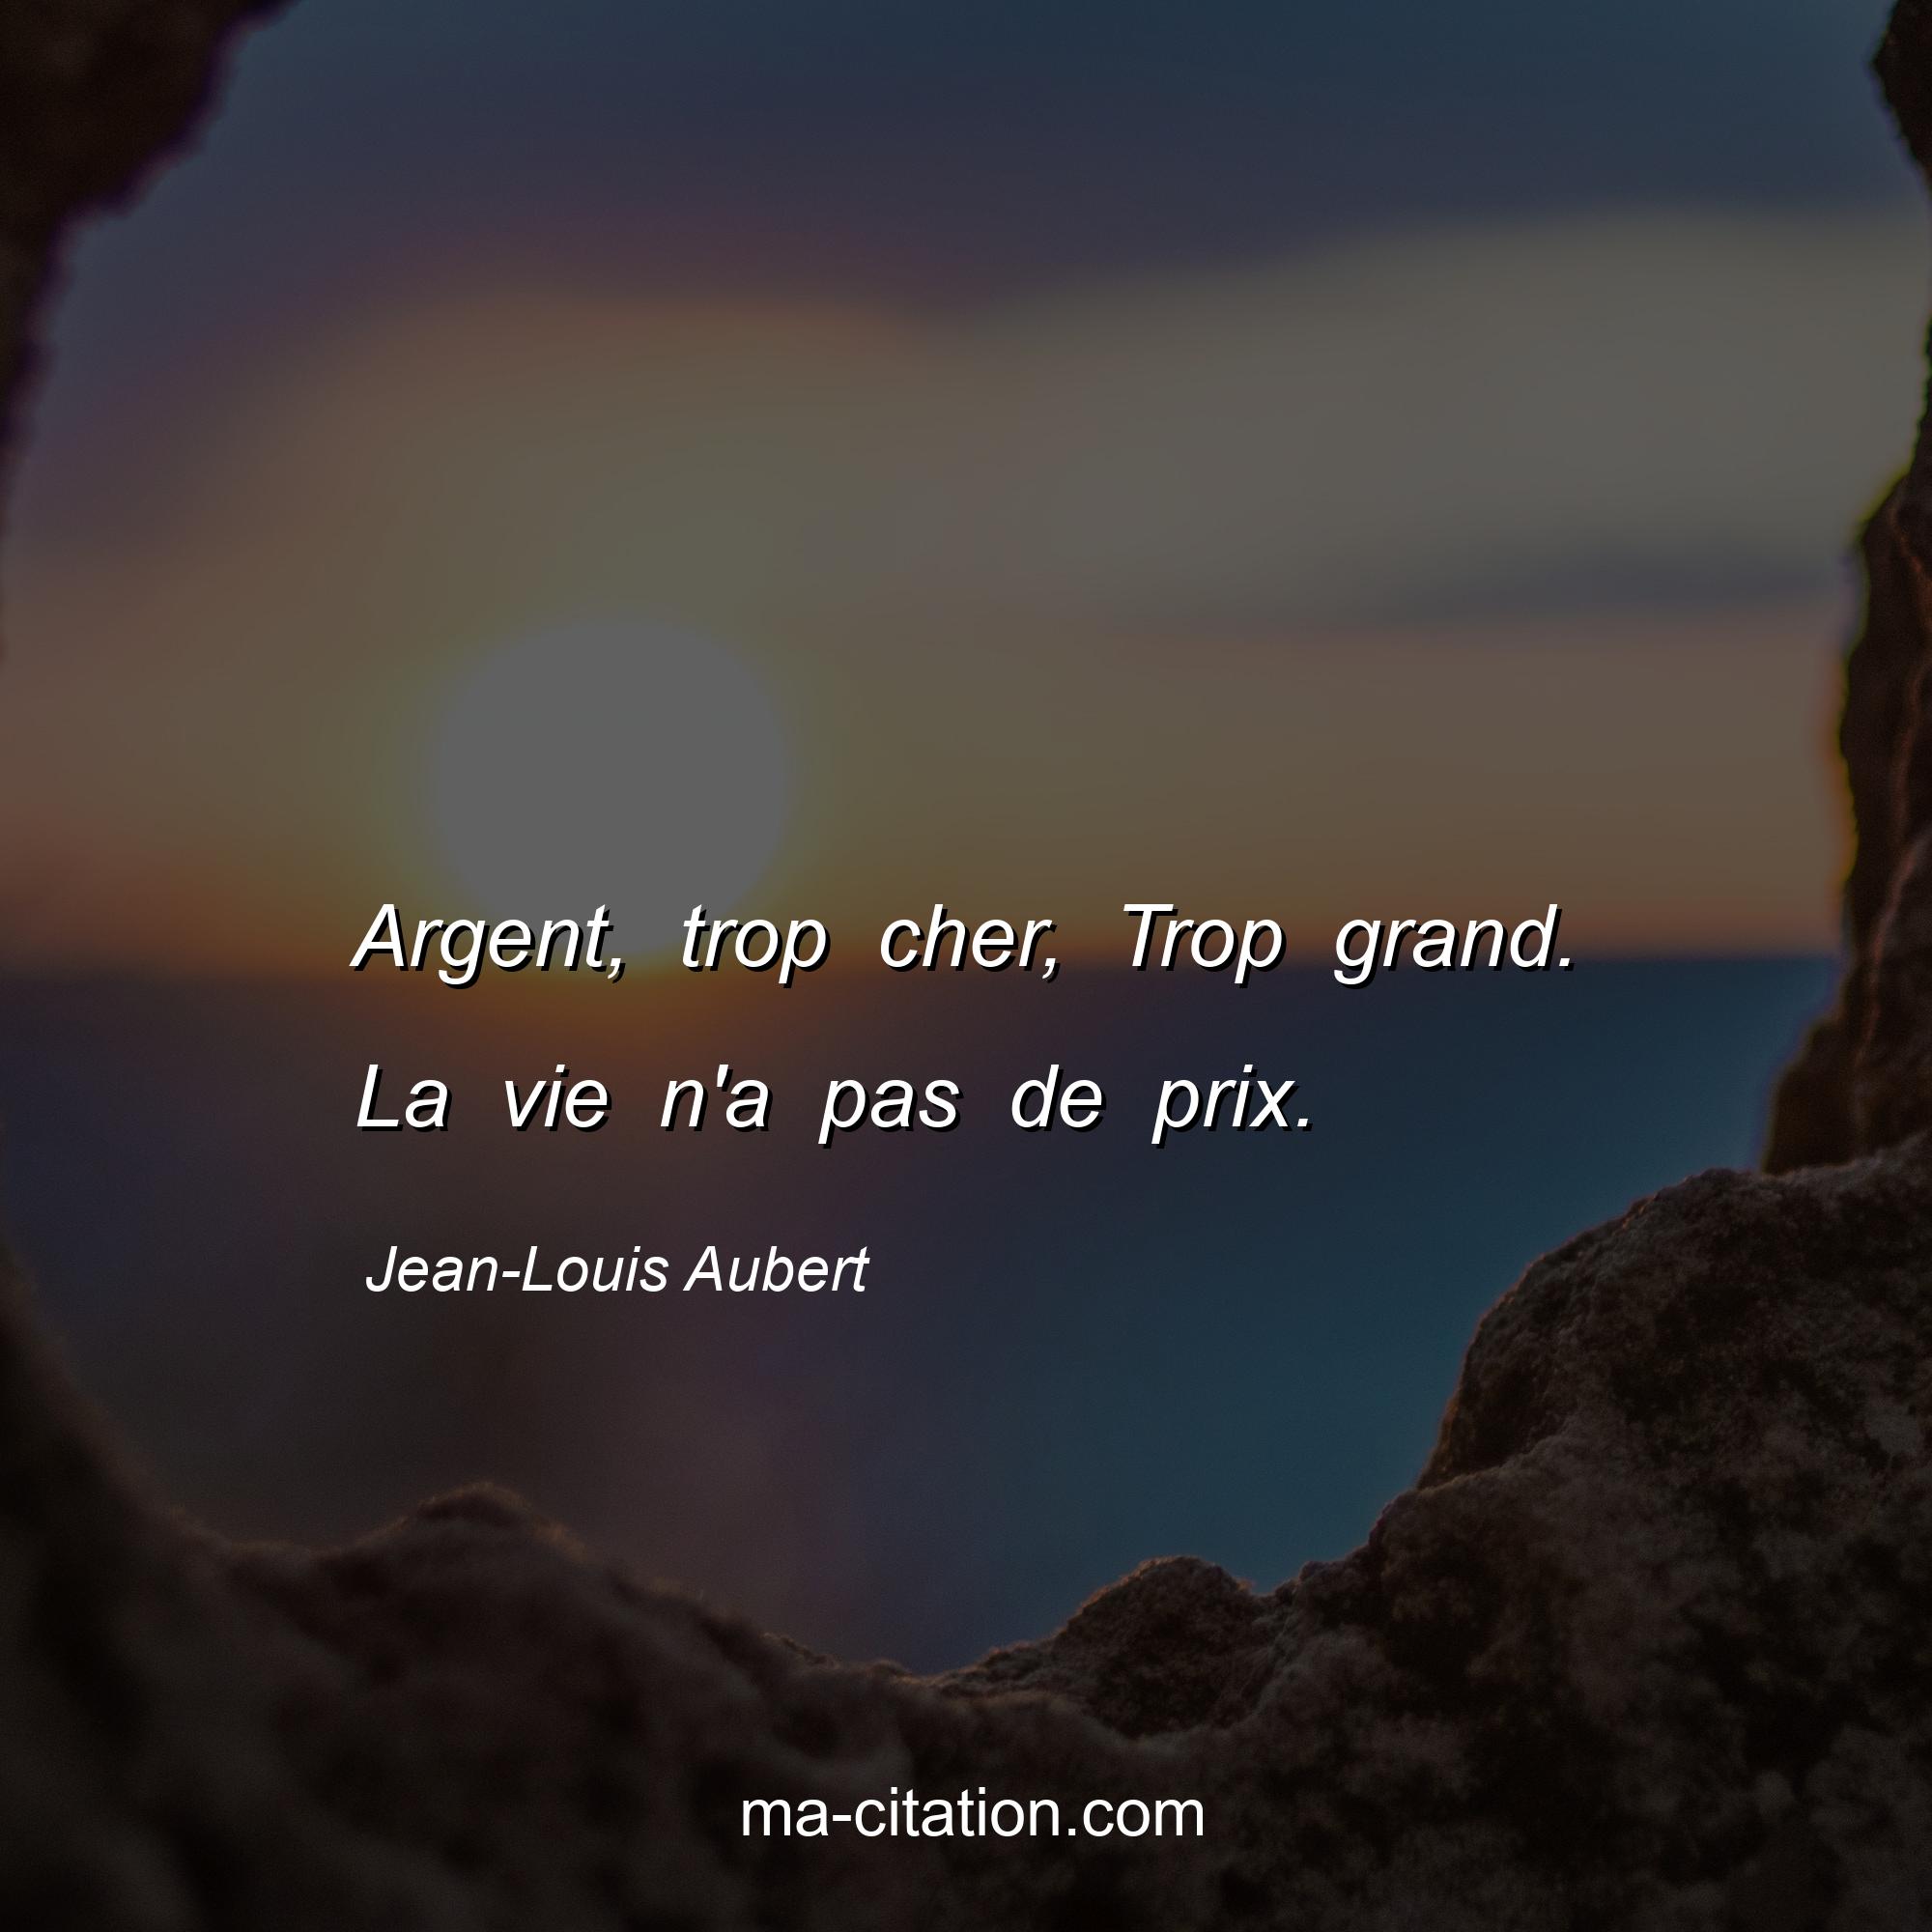 Jean-Louis Aubert : Argent, trop cher, Trop grand. La vie n'a pas de prix.